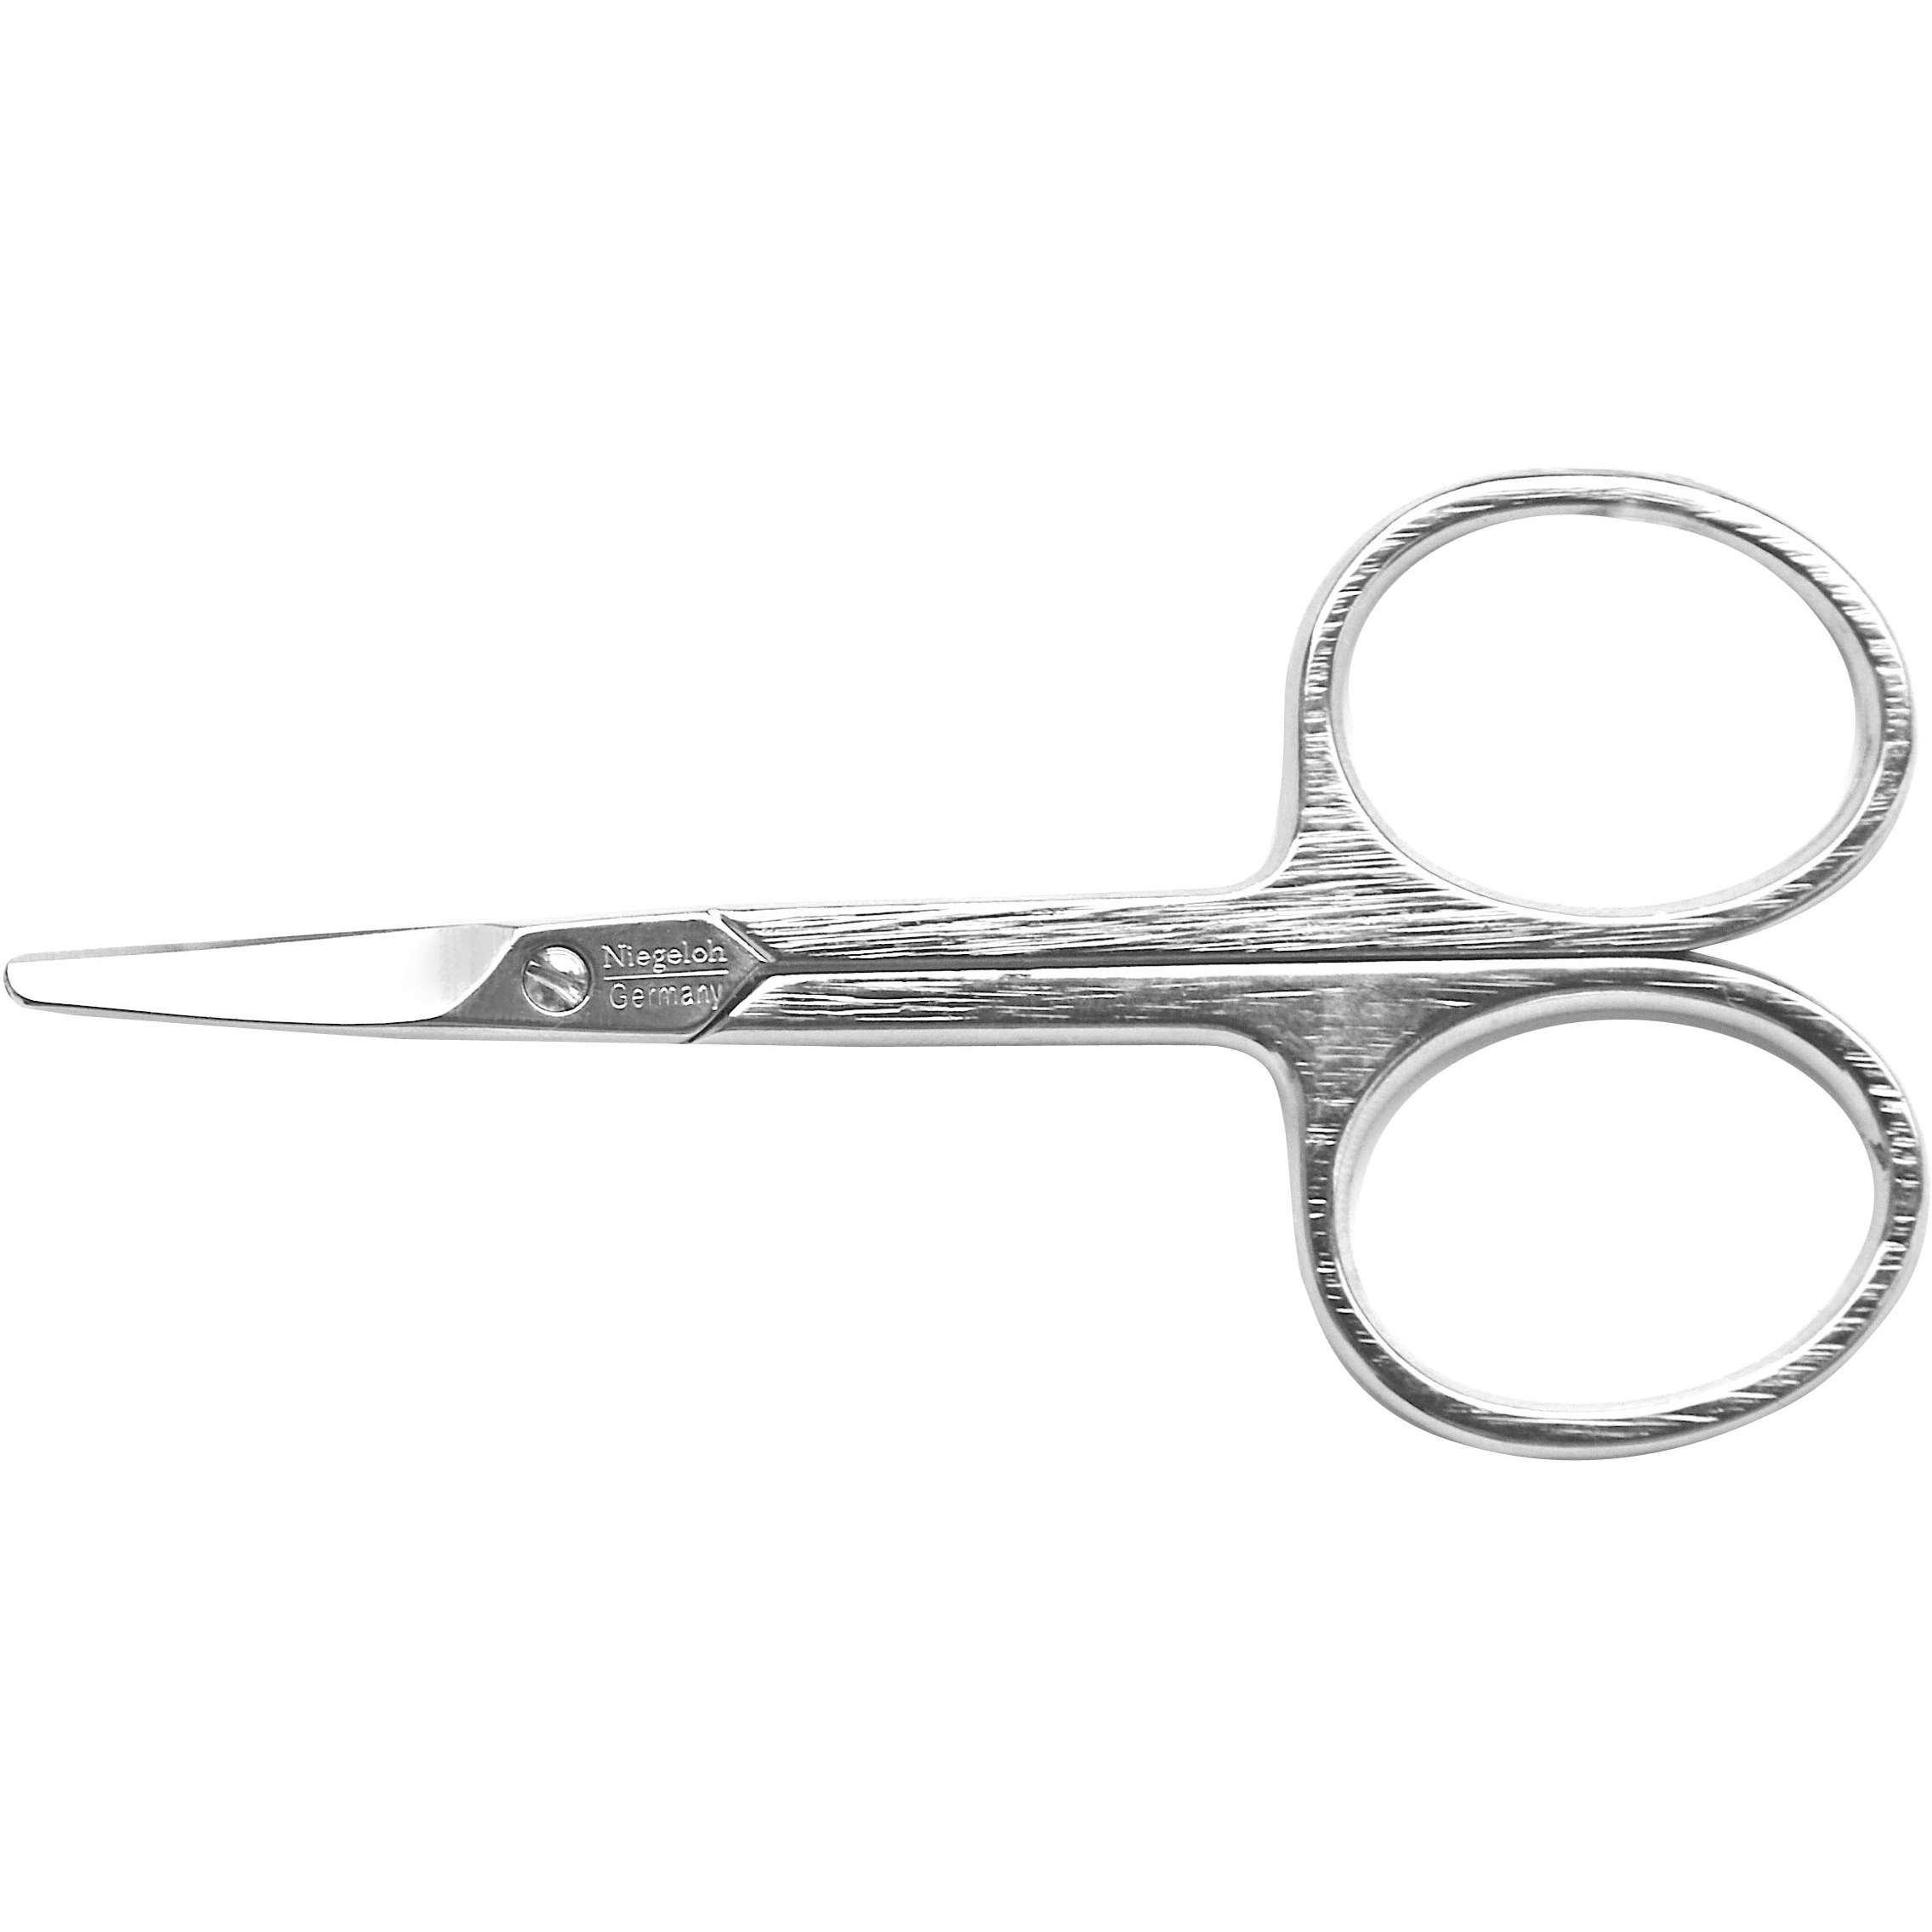 Bilde av Niegeloh Solingen Basic Baby Scissors Nickel Plated 8cm